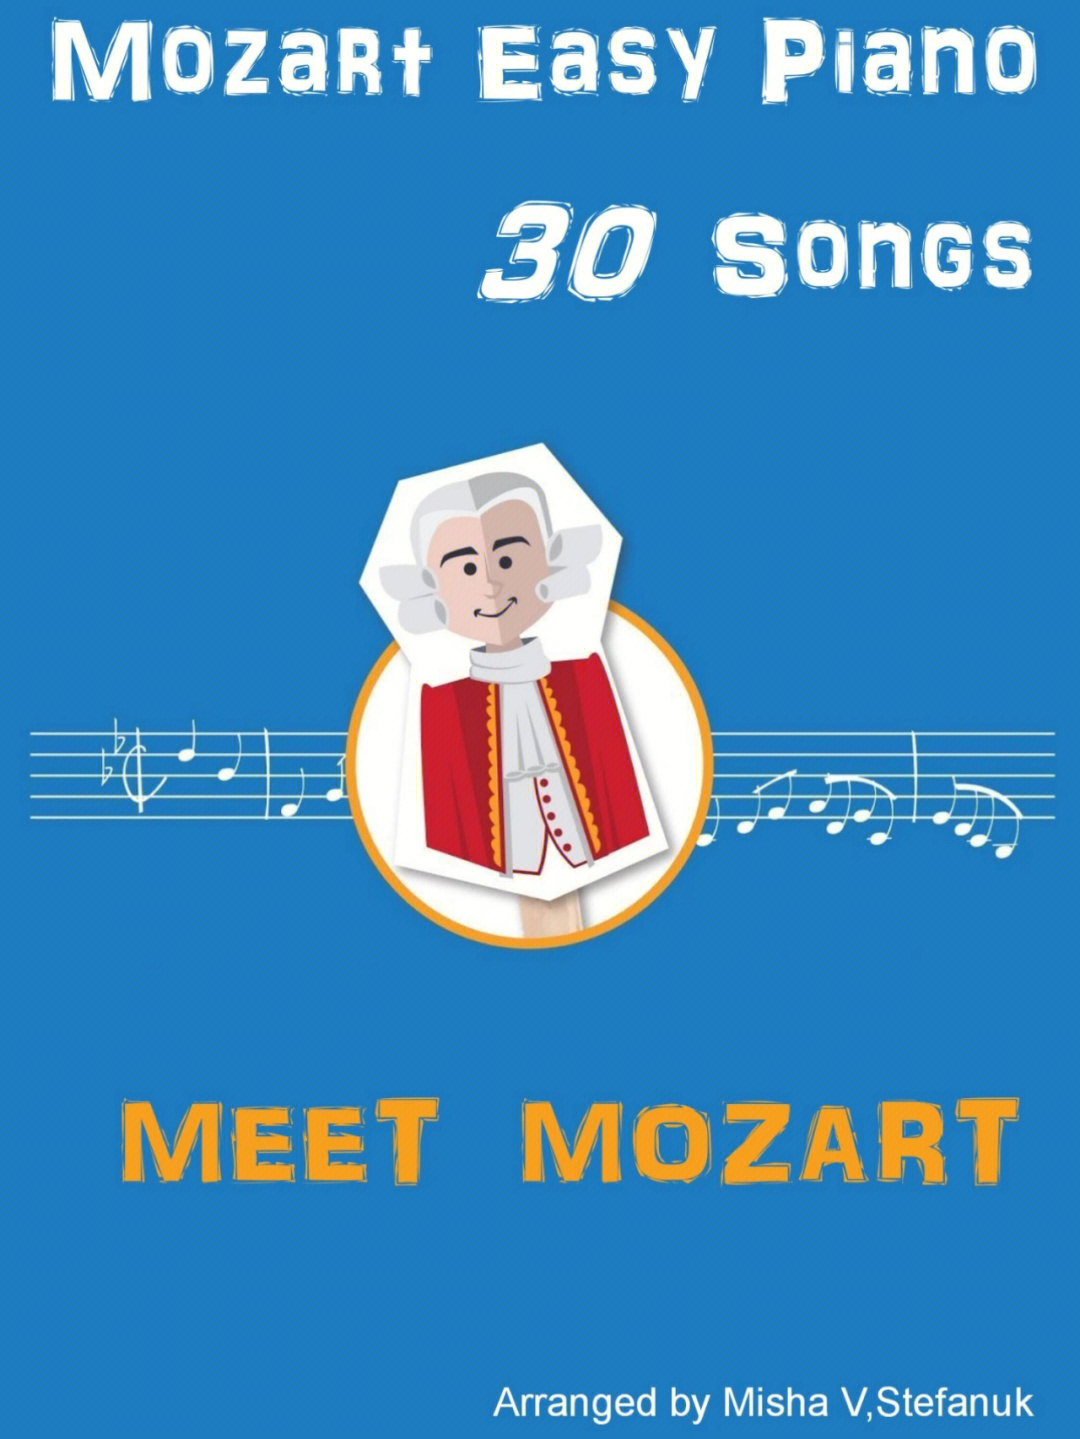 莫扎特摇篮曲创作背景图片